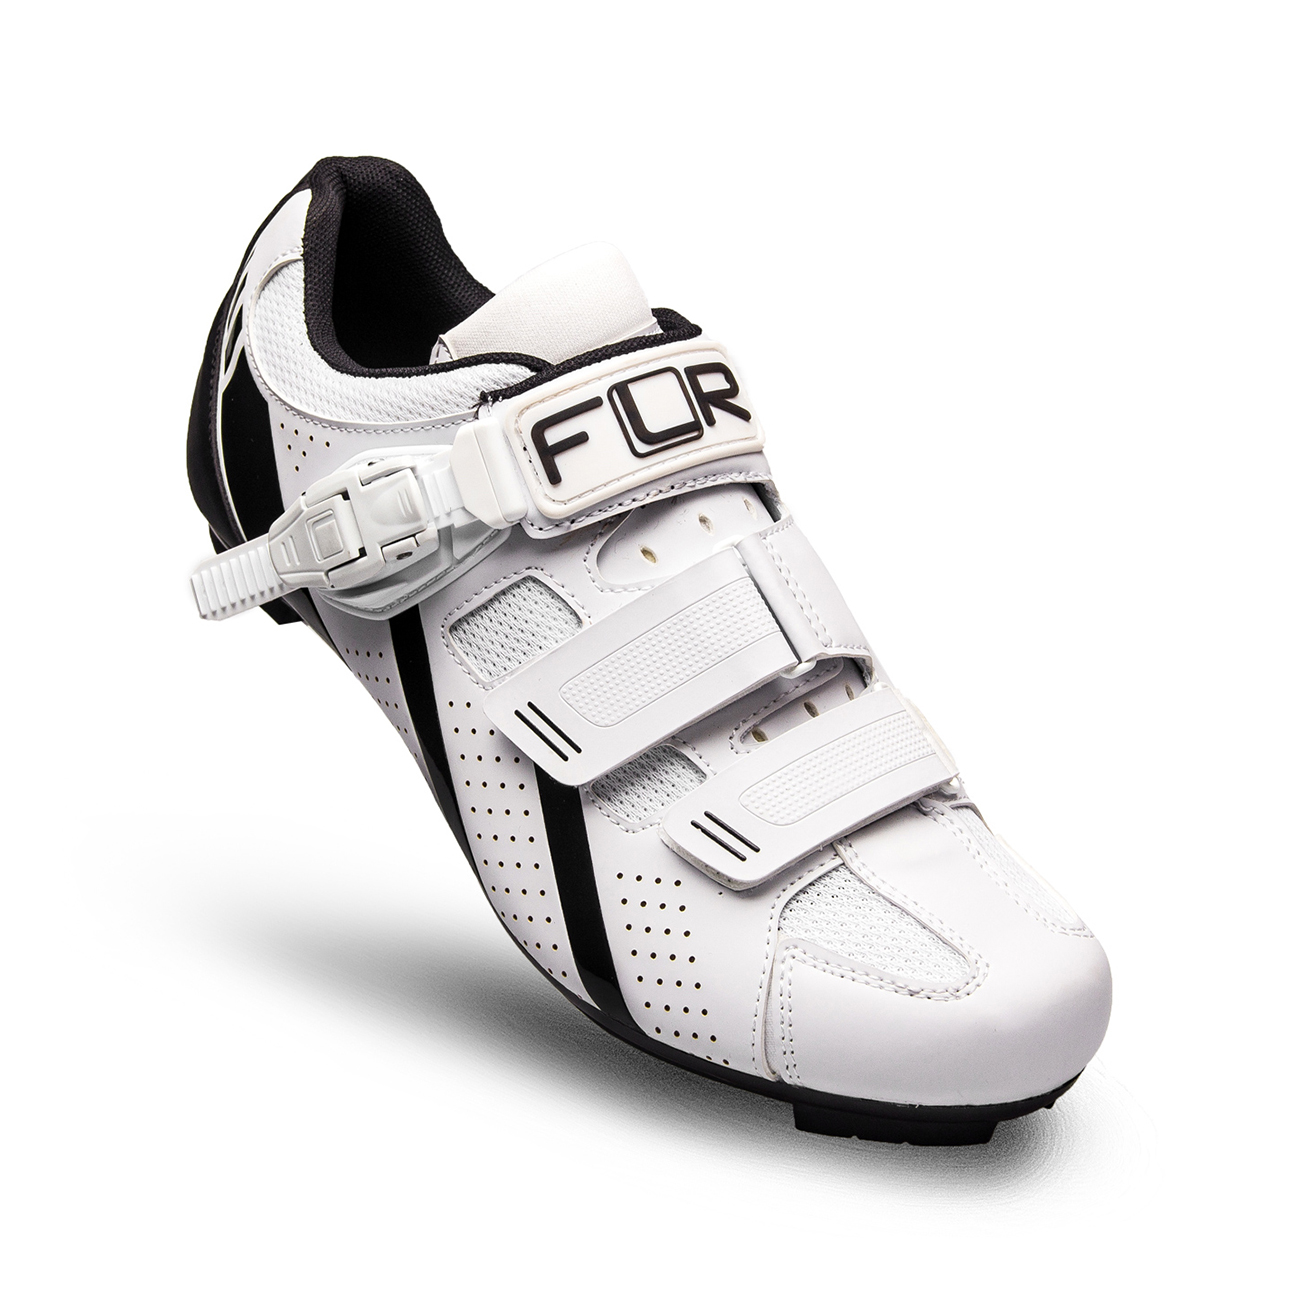 
                FLR Cyklistické tretry - F15 - čierna/biela 43
            